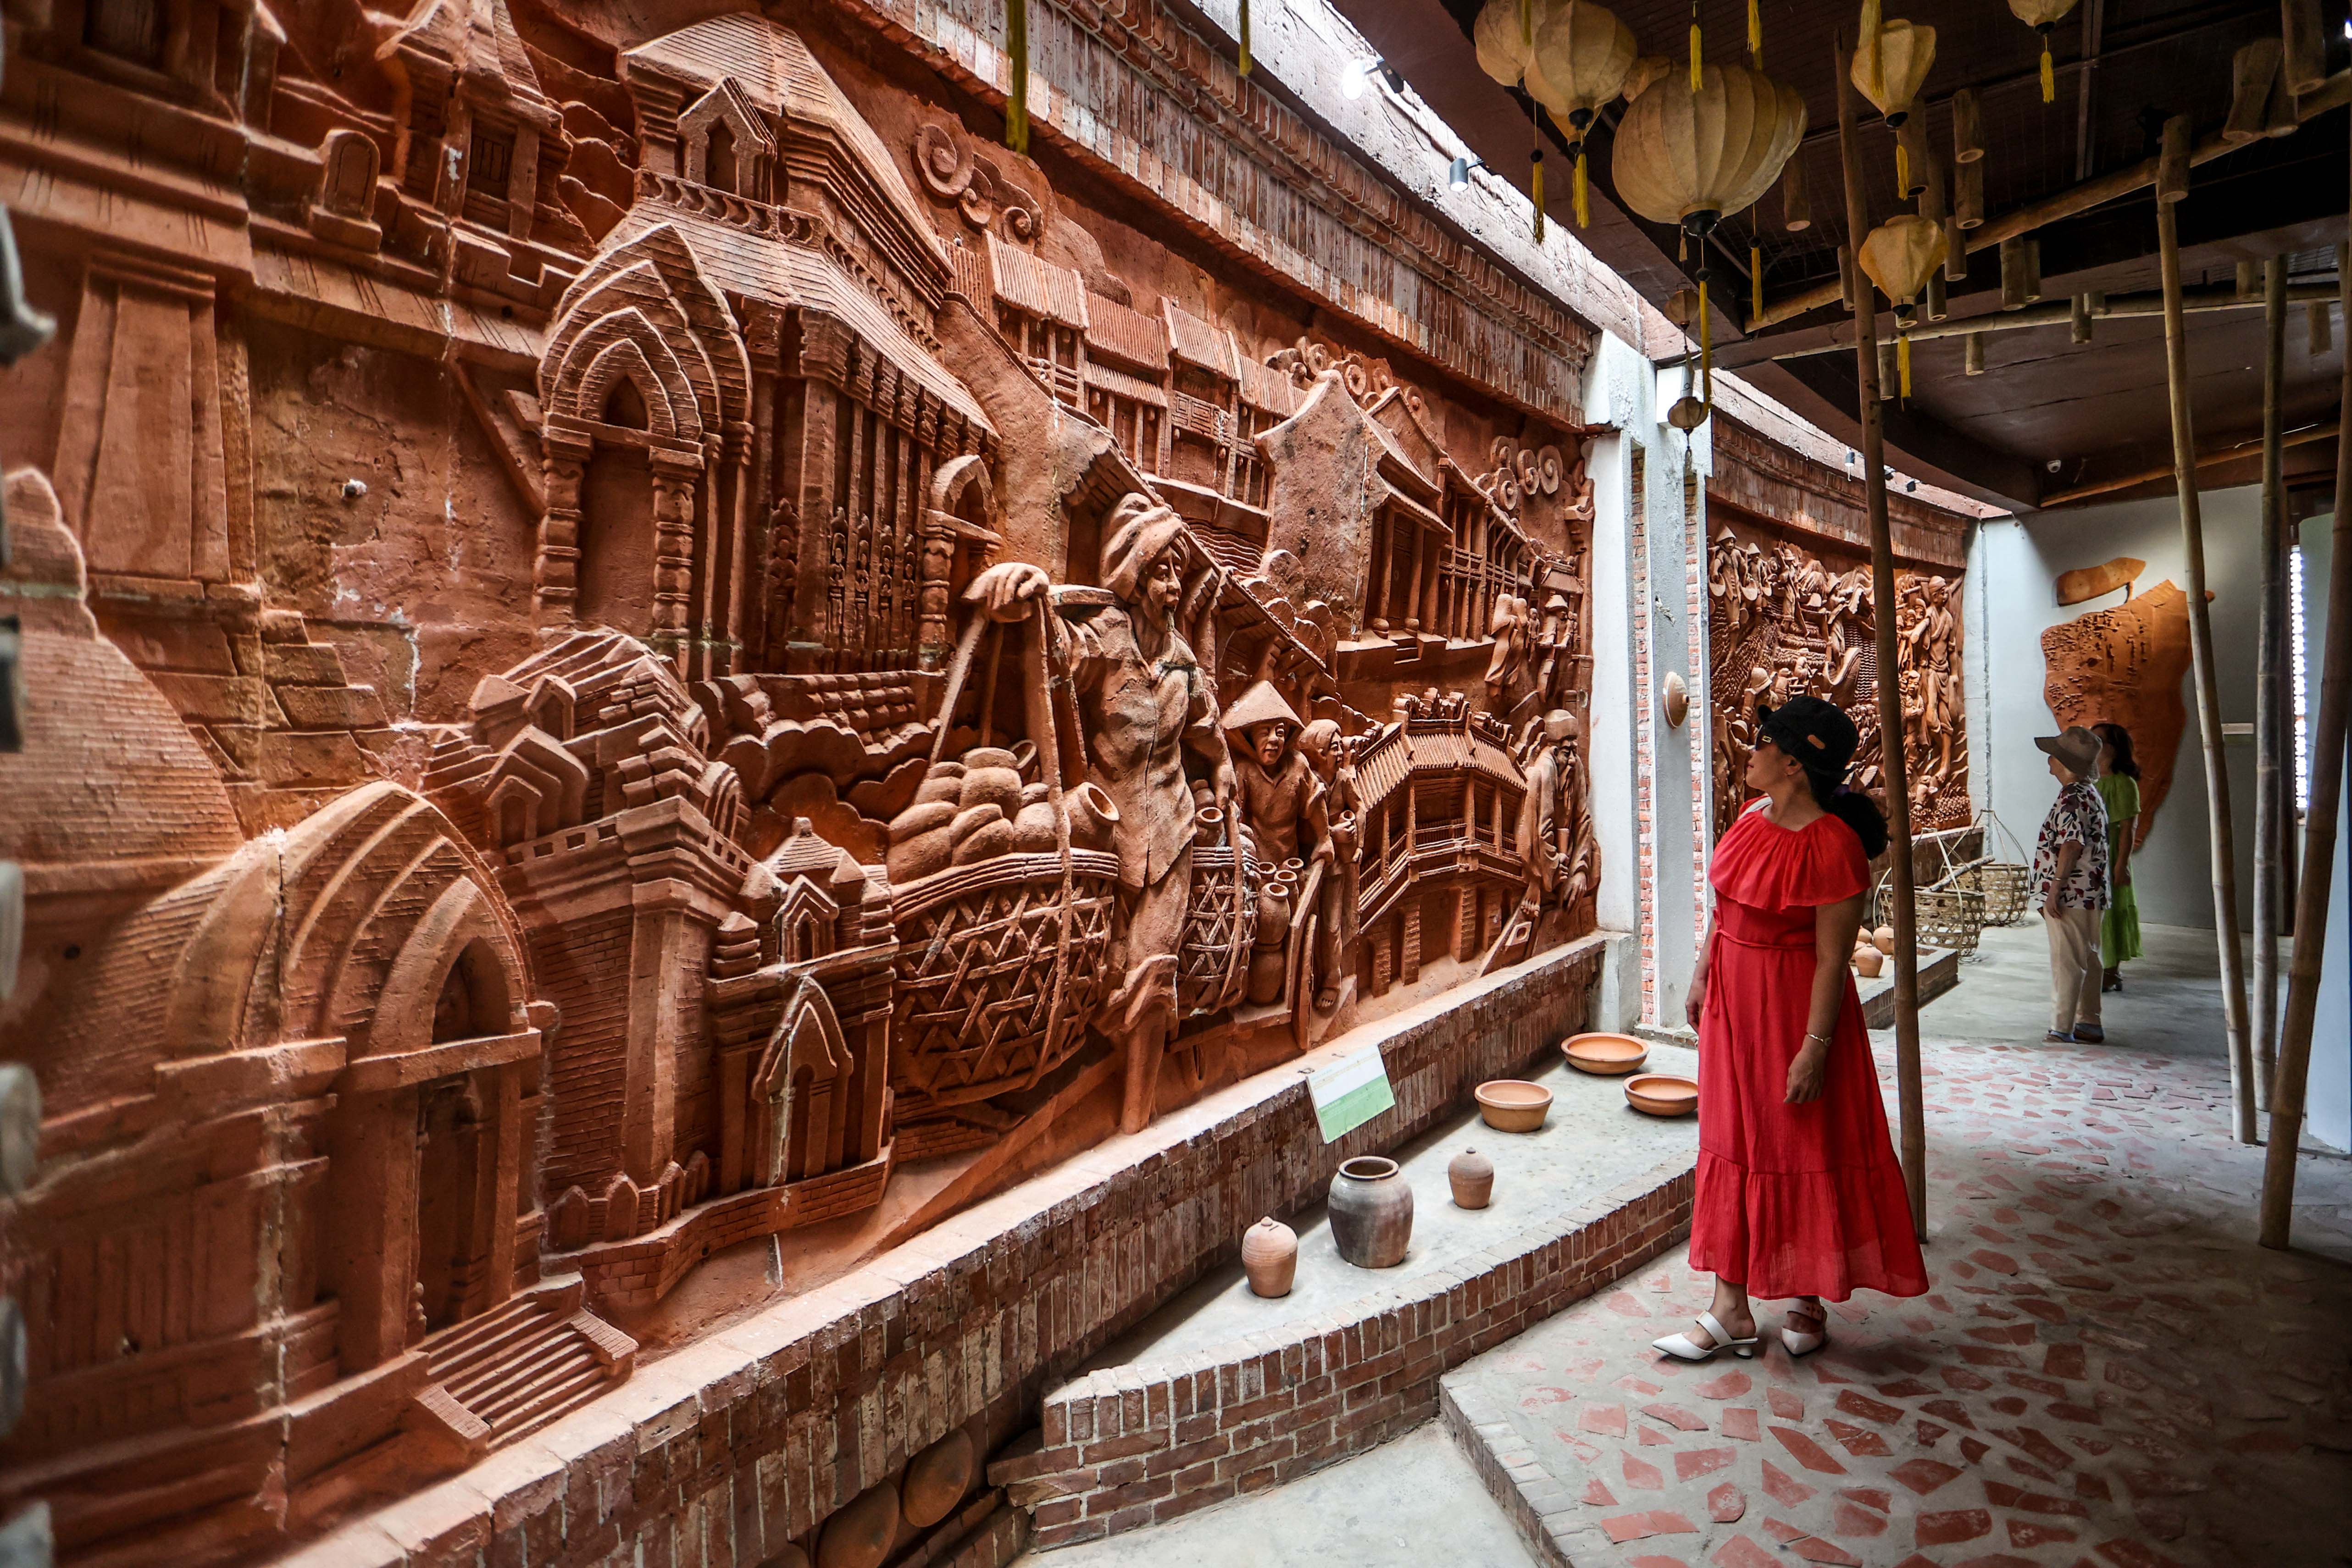 Tourists visit Thanh Ha Pottery Park. Photo: Nguyen Khanh / Tuoi Tre